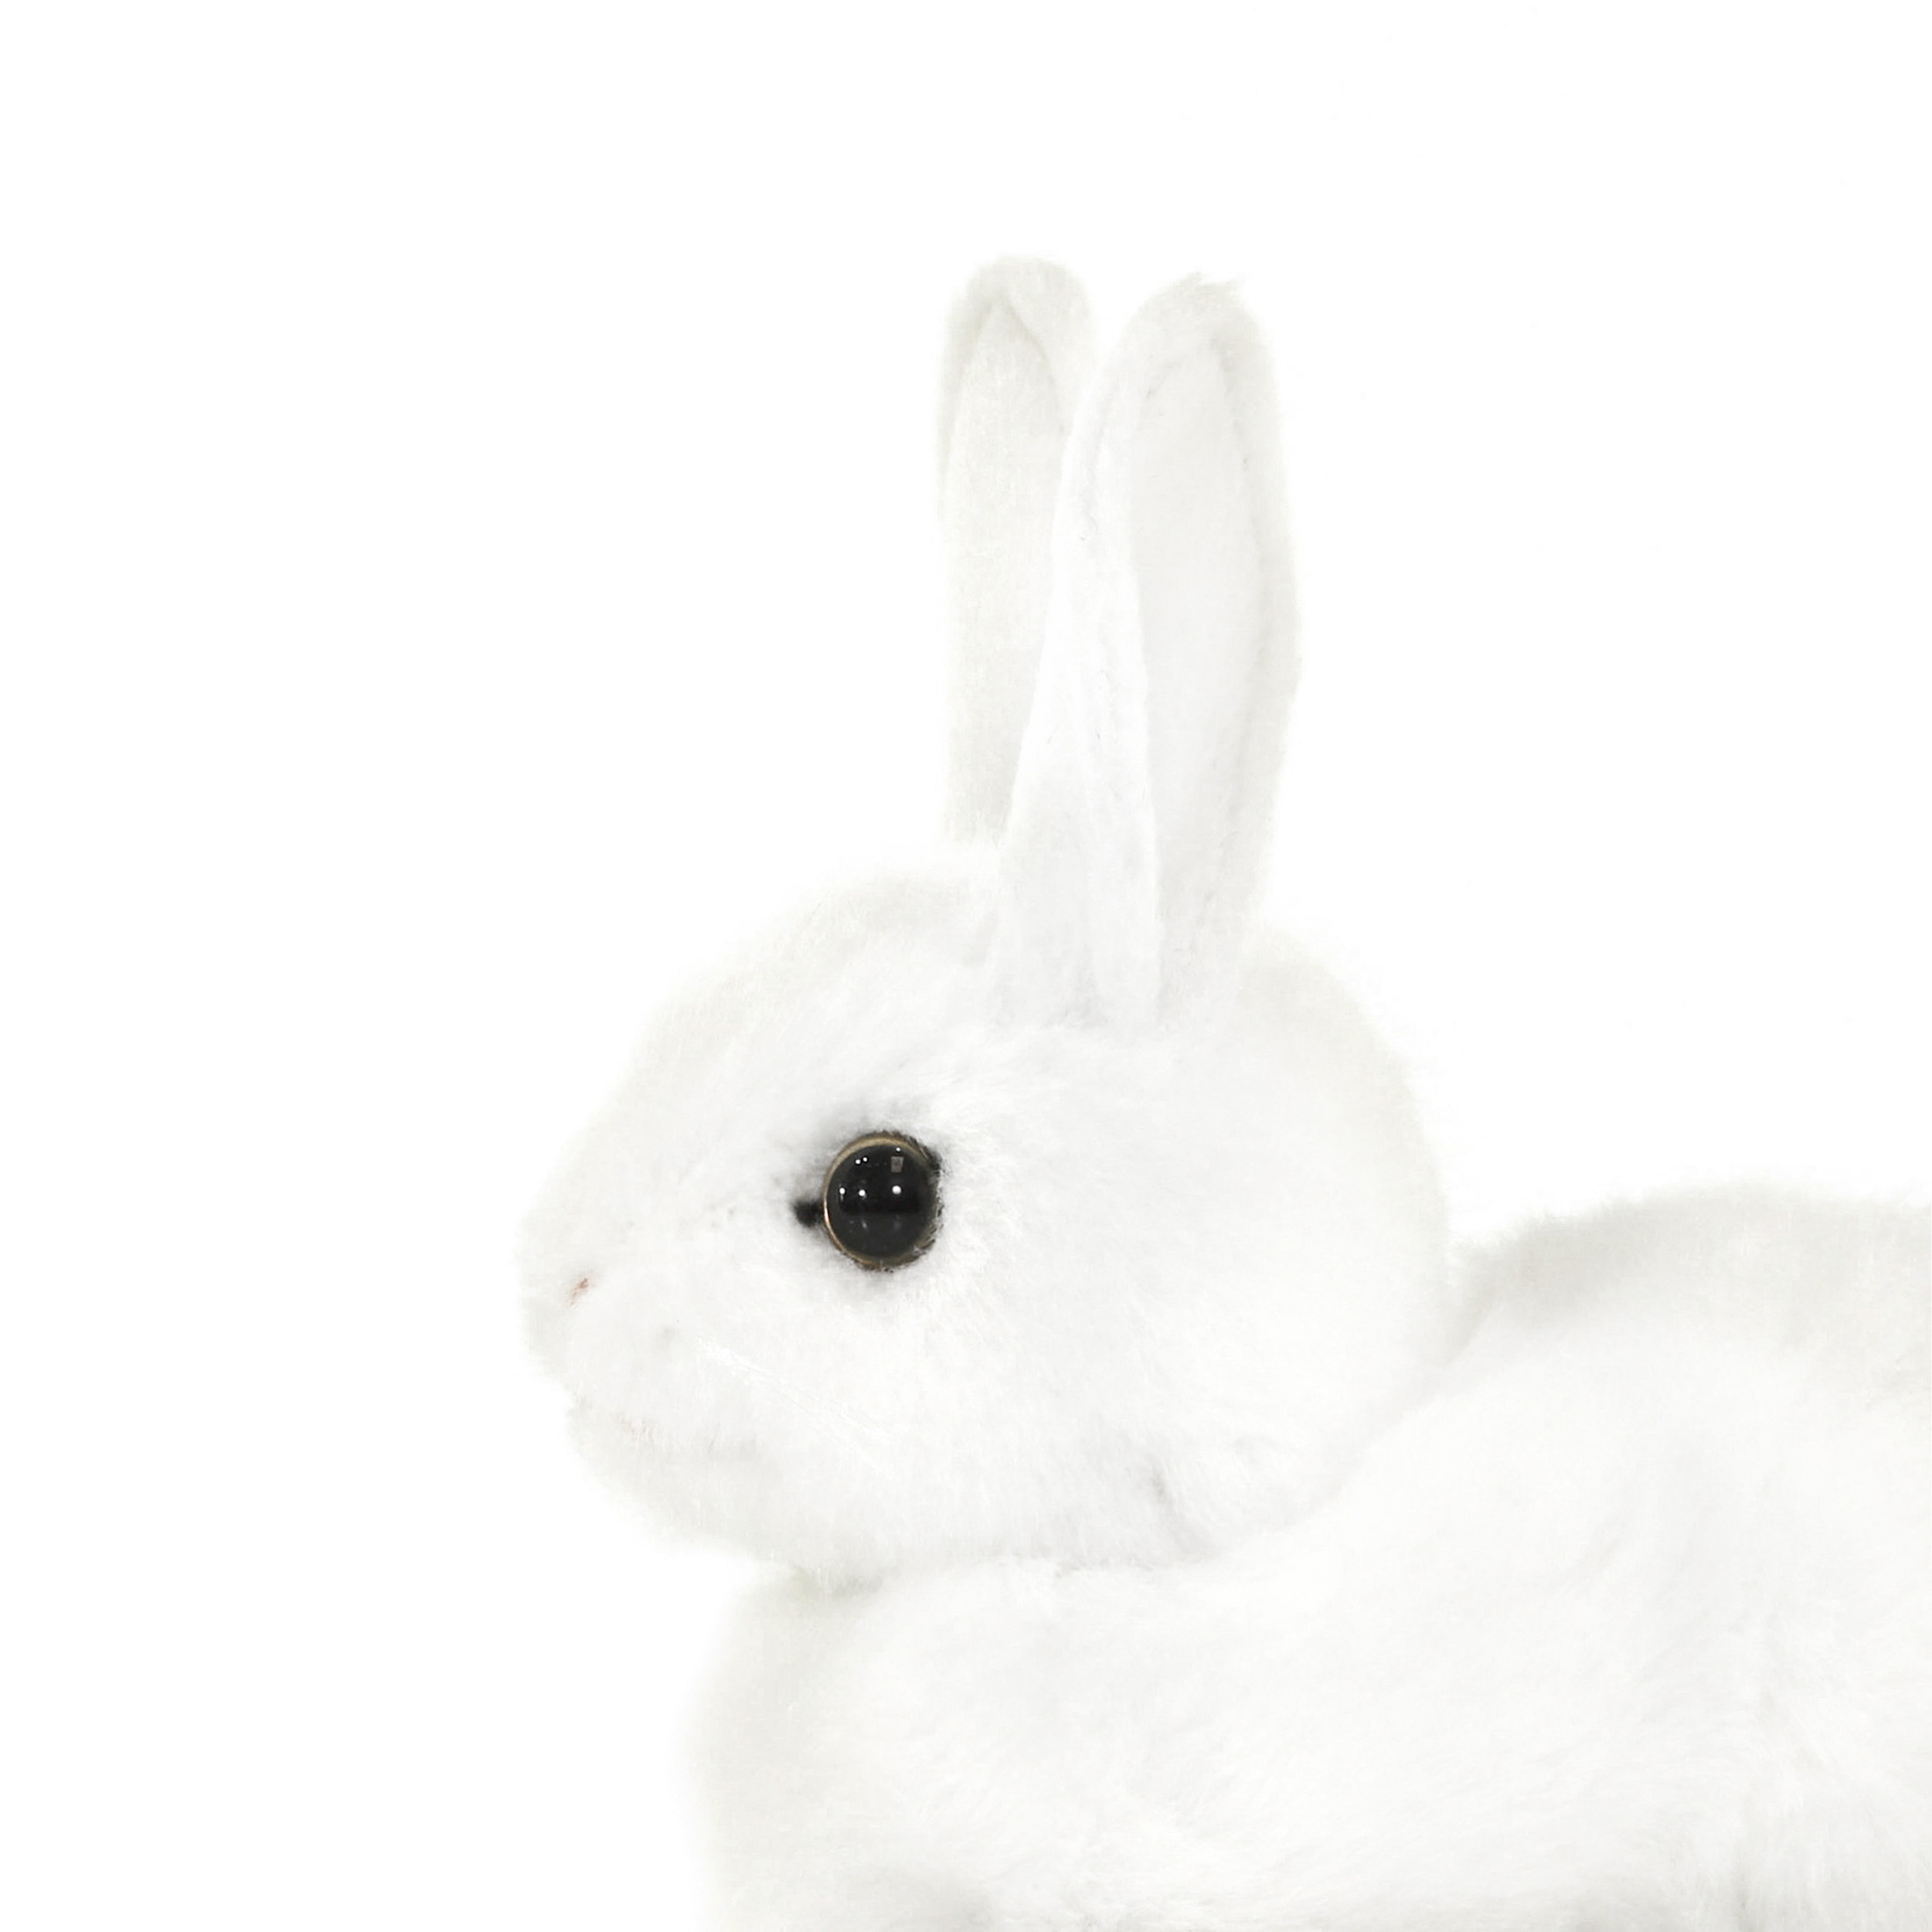 2832 Кролик, белый, 17 см